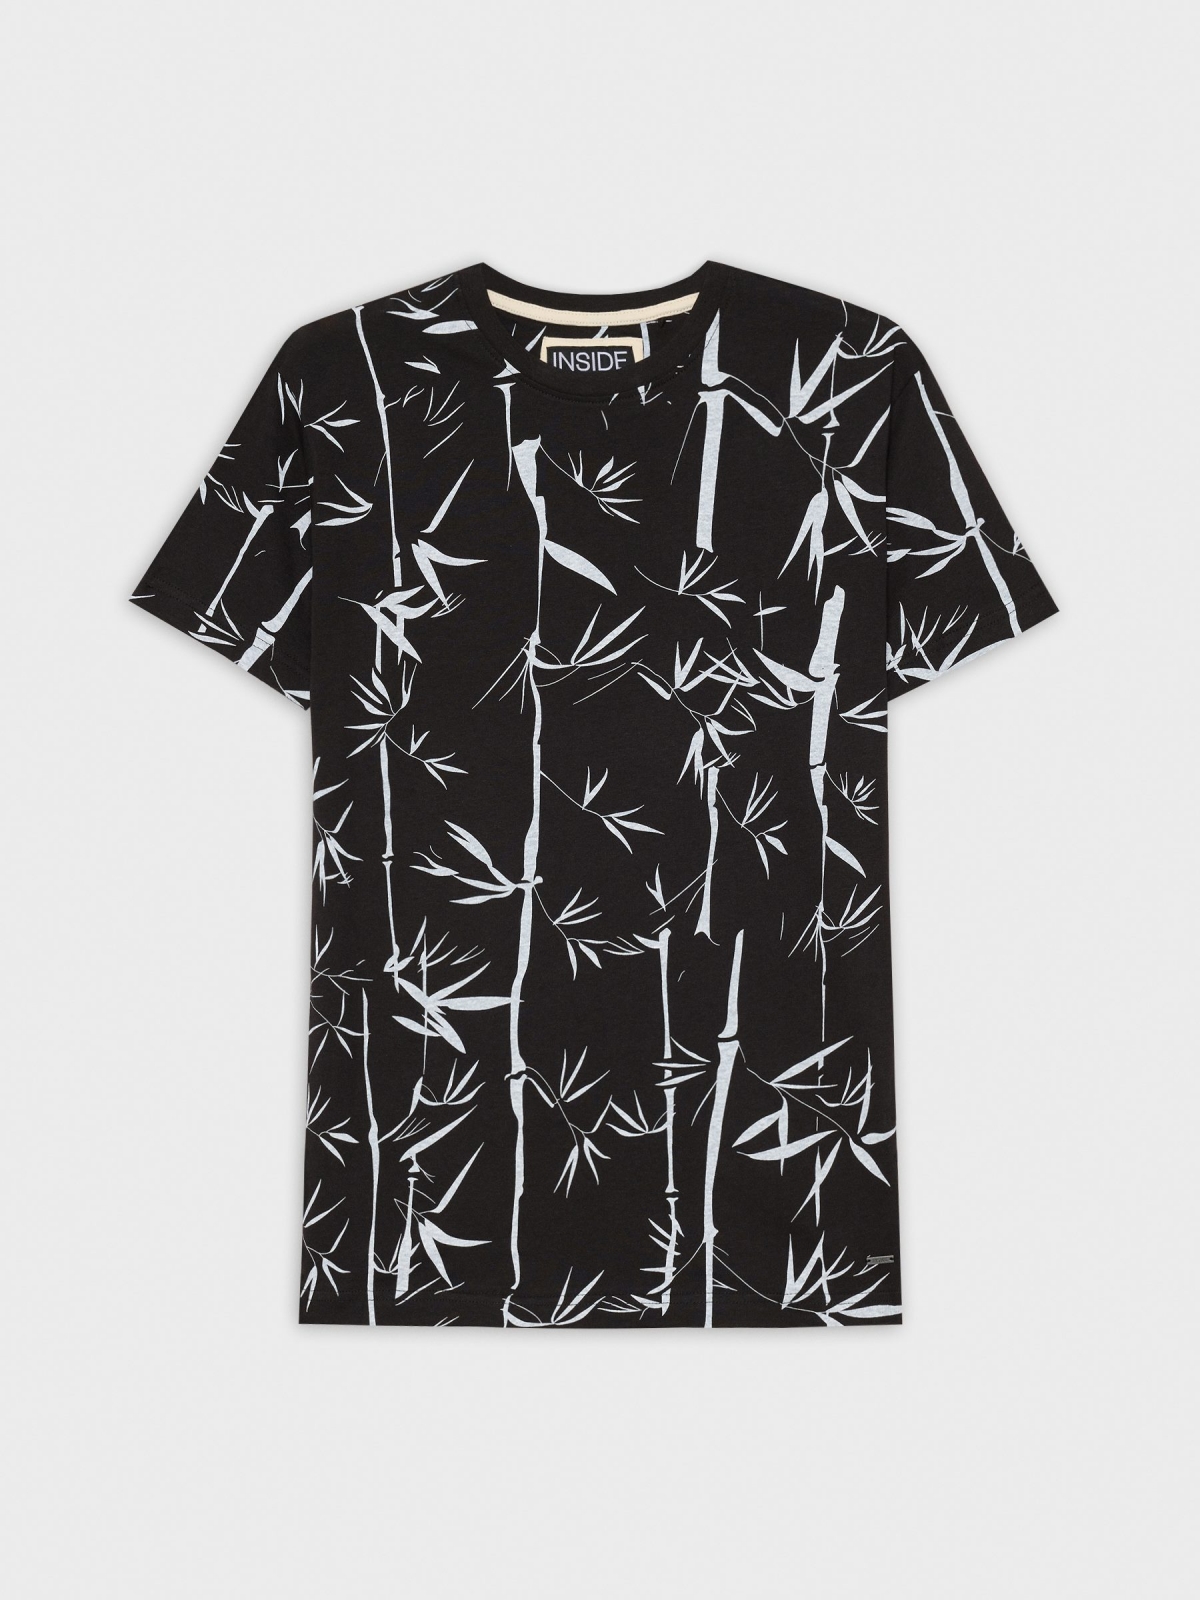  T-shirt estampada de bambu preto